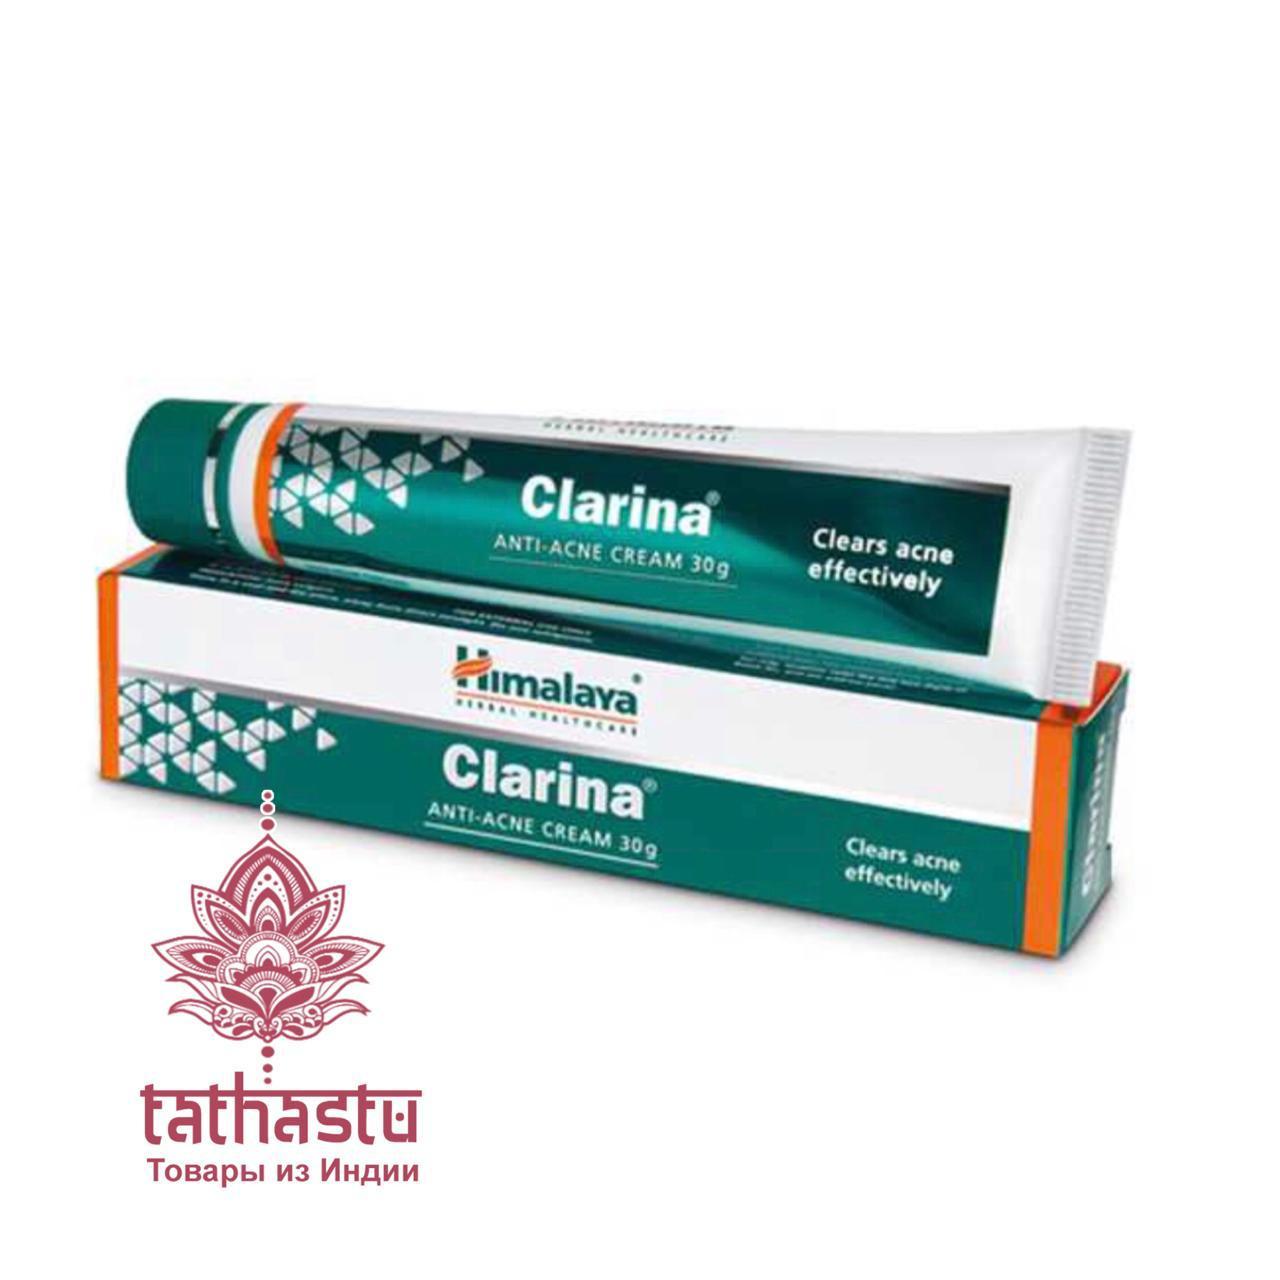 Крем Кларина – высокоэффективное средство по борьбе с недостатками кожи, такими как прыщи, угревая сыпь, пигментация. Tathastu товары и индии